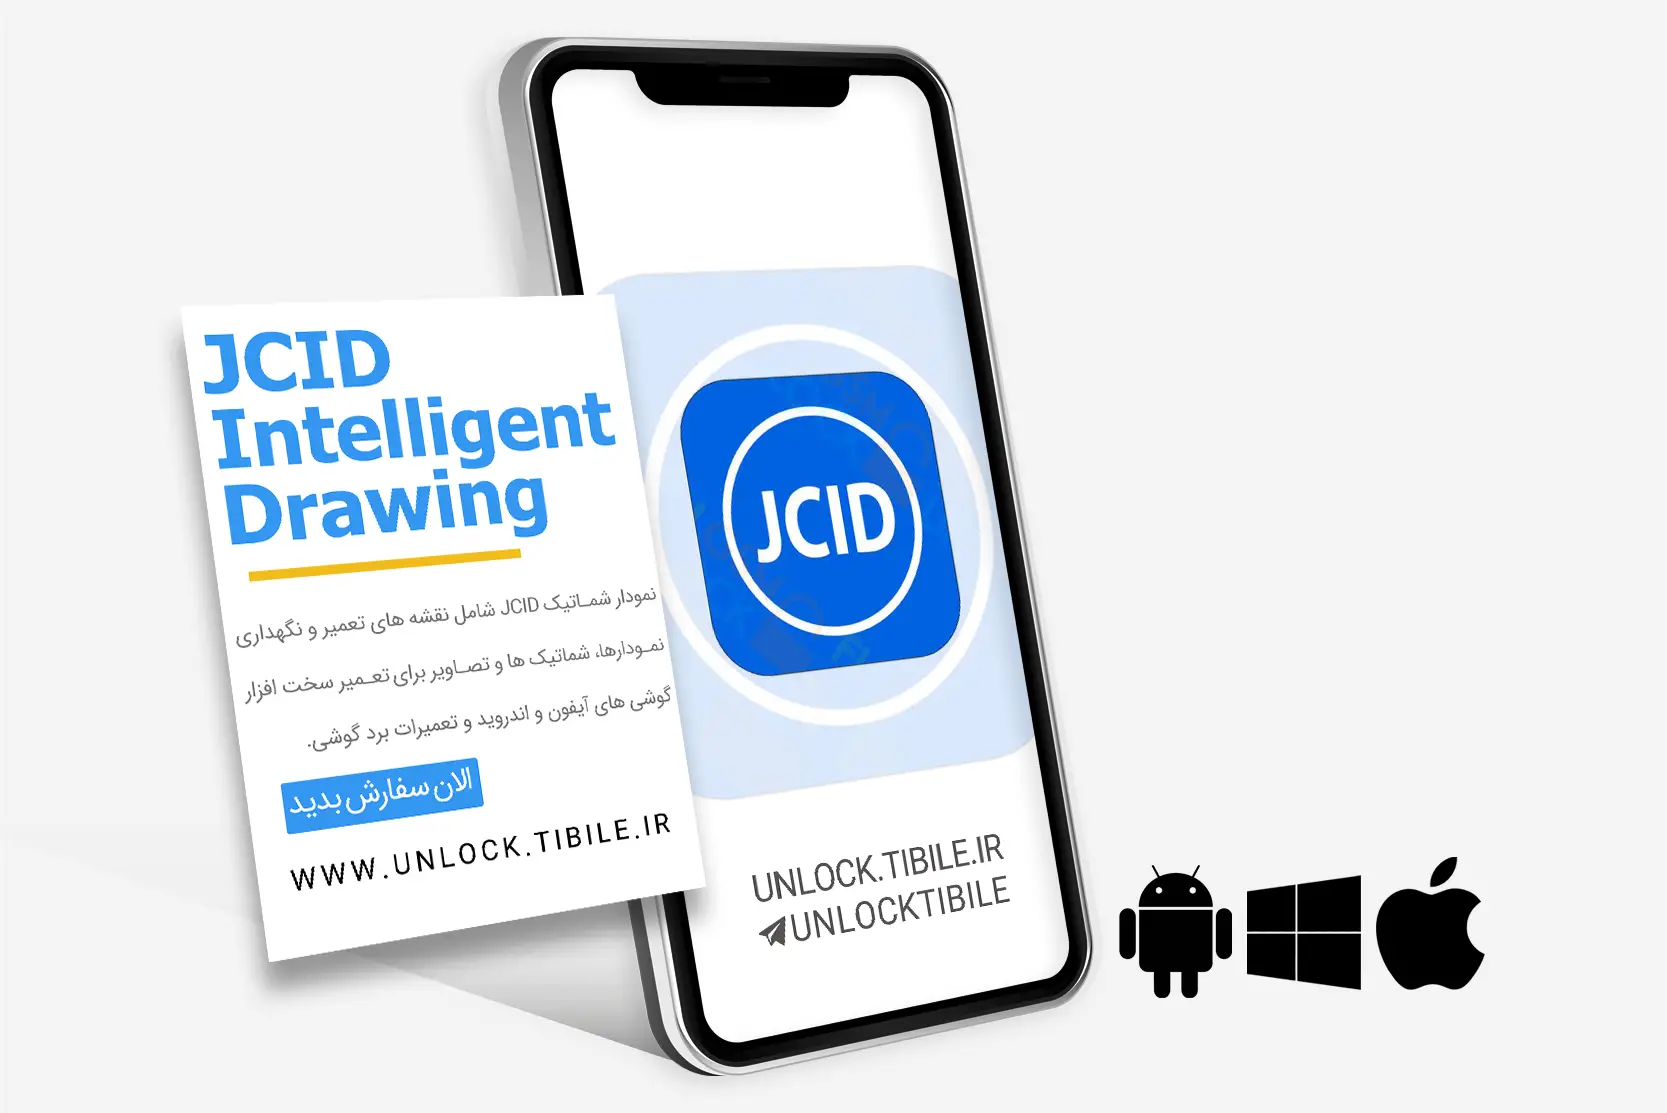 JCID Intelligent Drawing